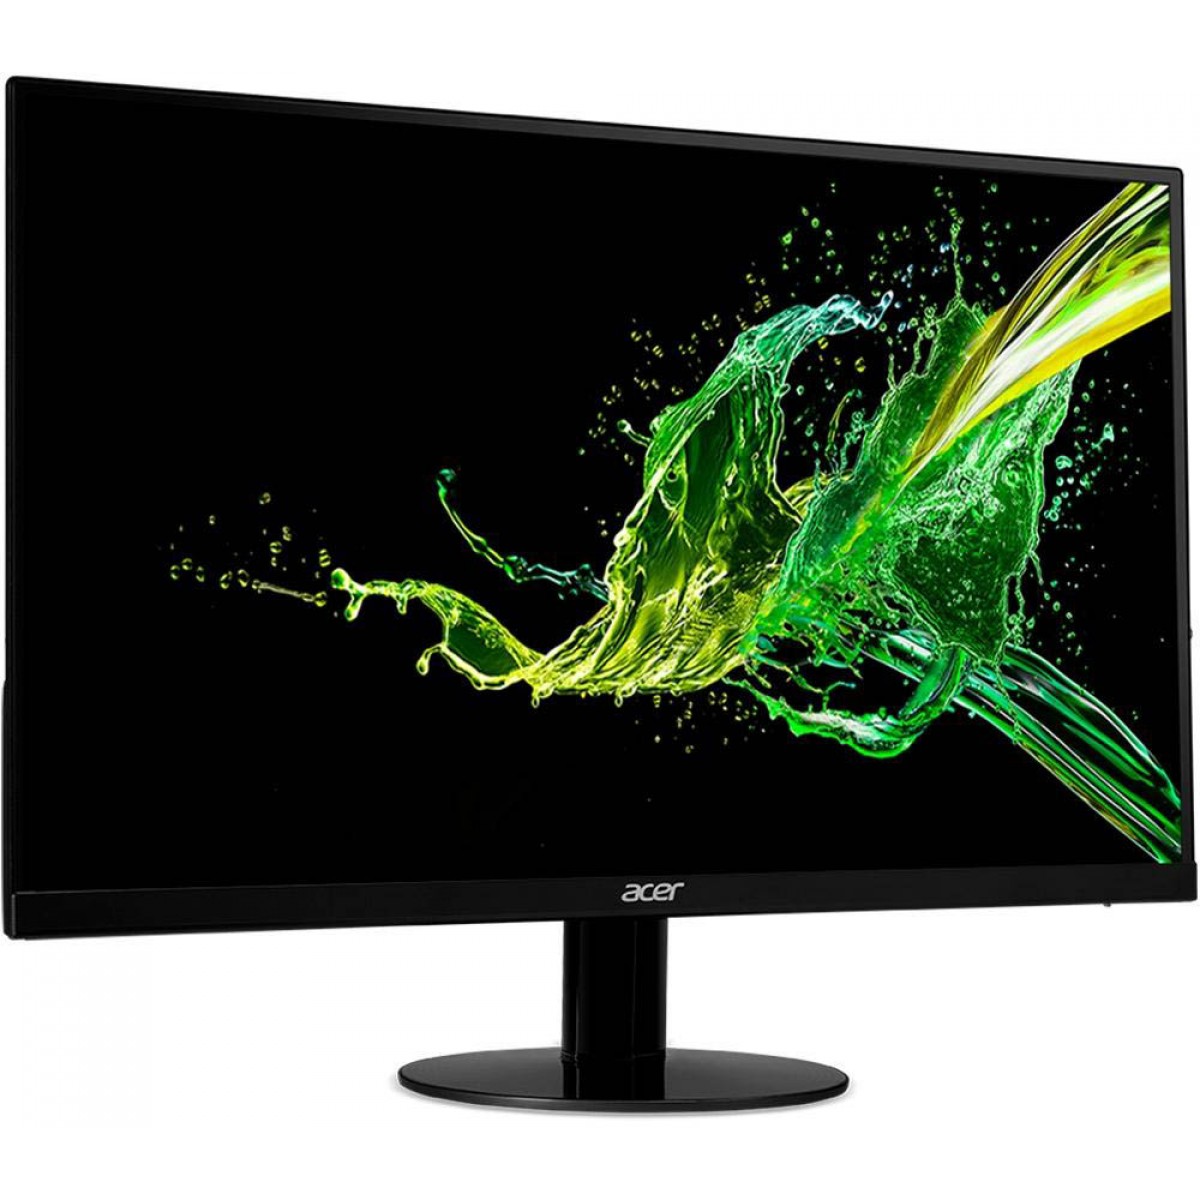 Monitor Gamer Acer SA230 23 Pol, Full HD, IPS, 1ms, UM.VS0AA.B03